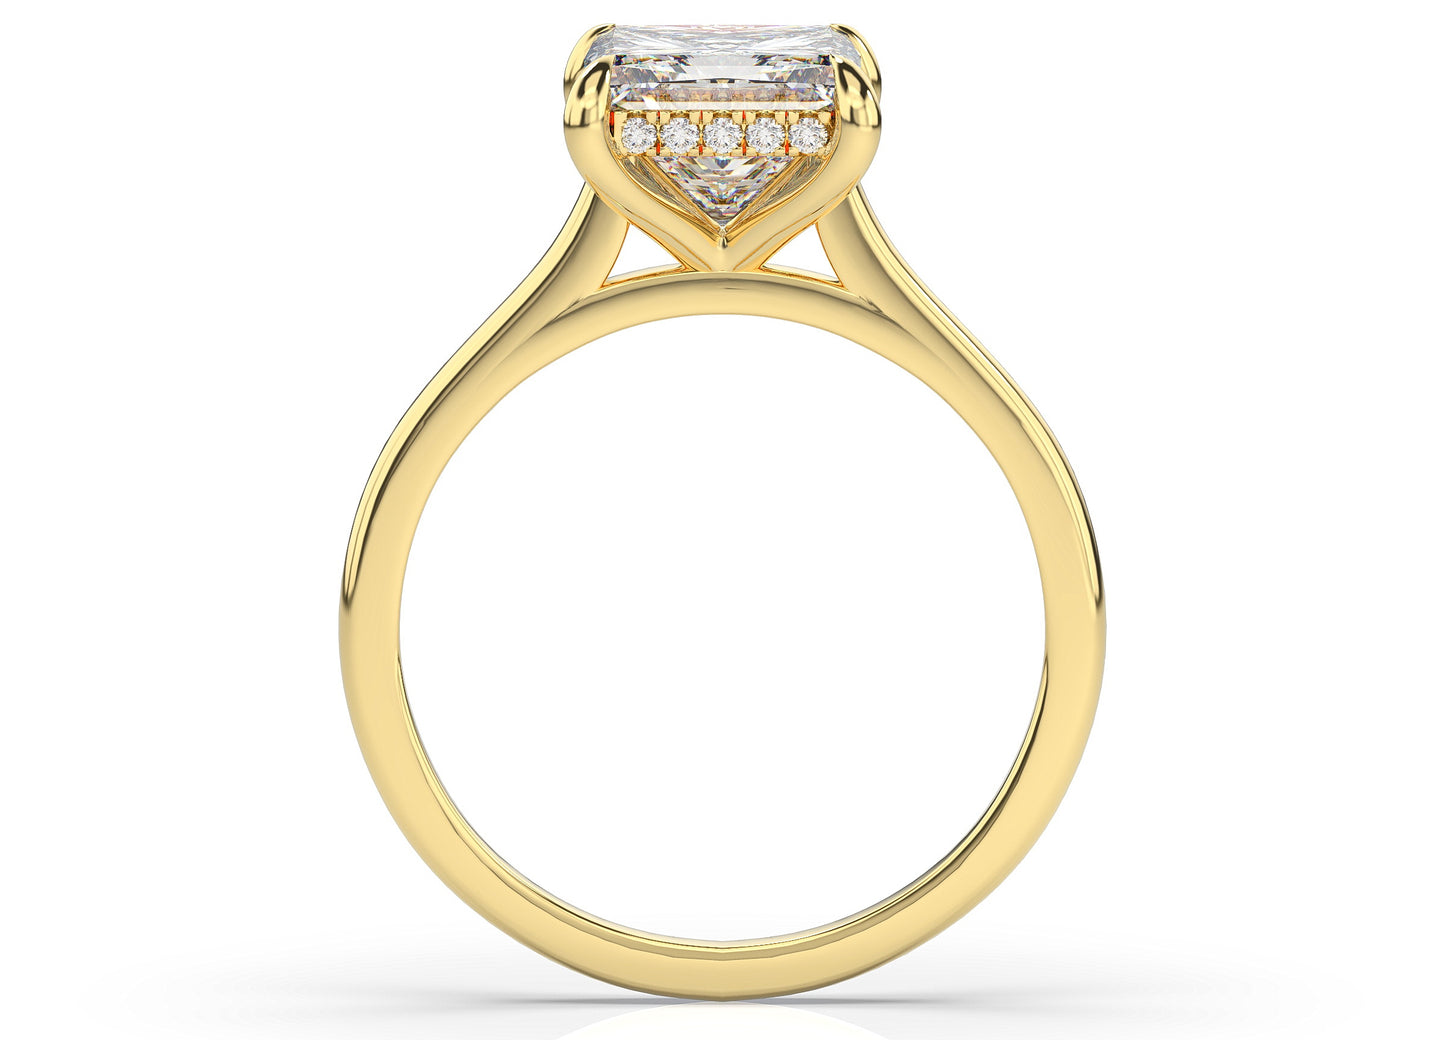 Princess Hidden Halo Thin Band Engagement Ring